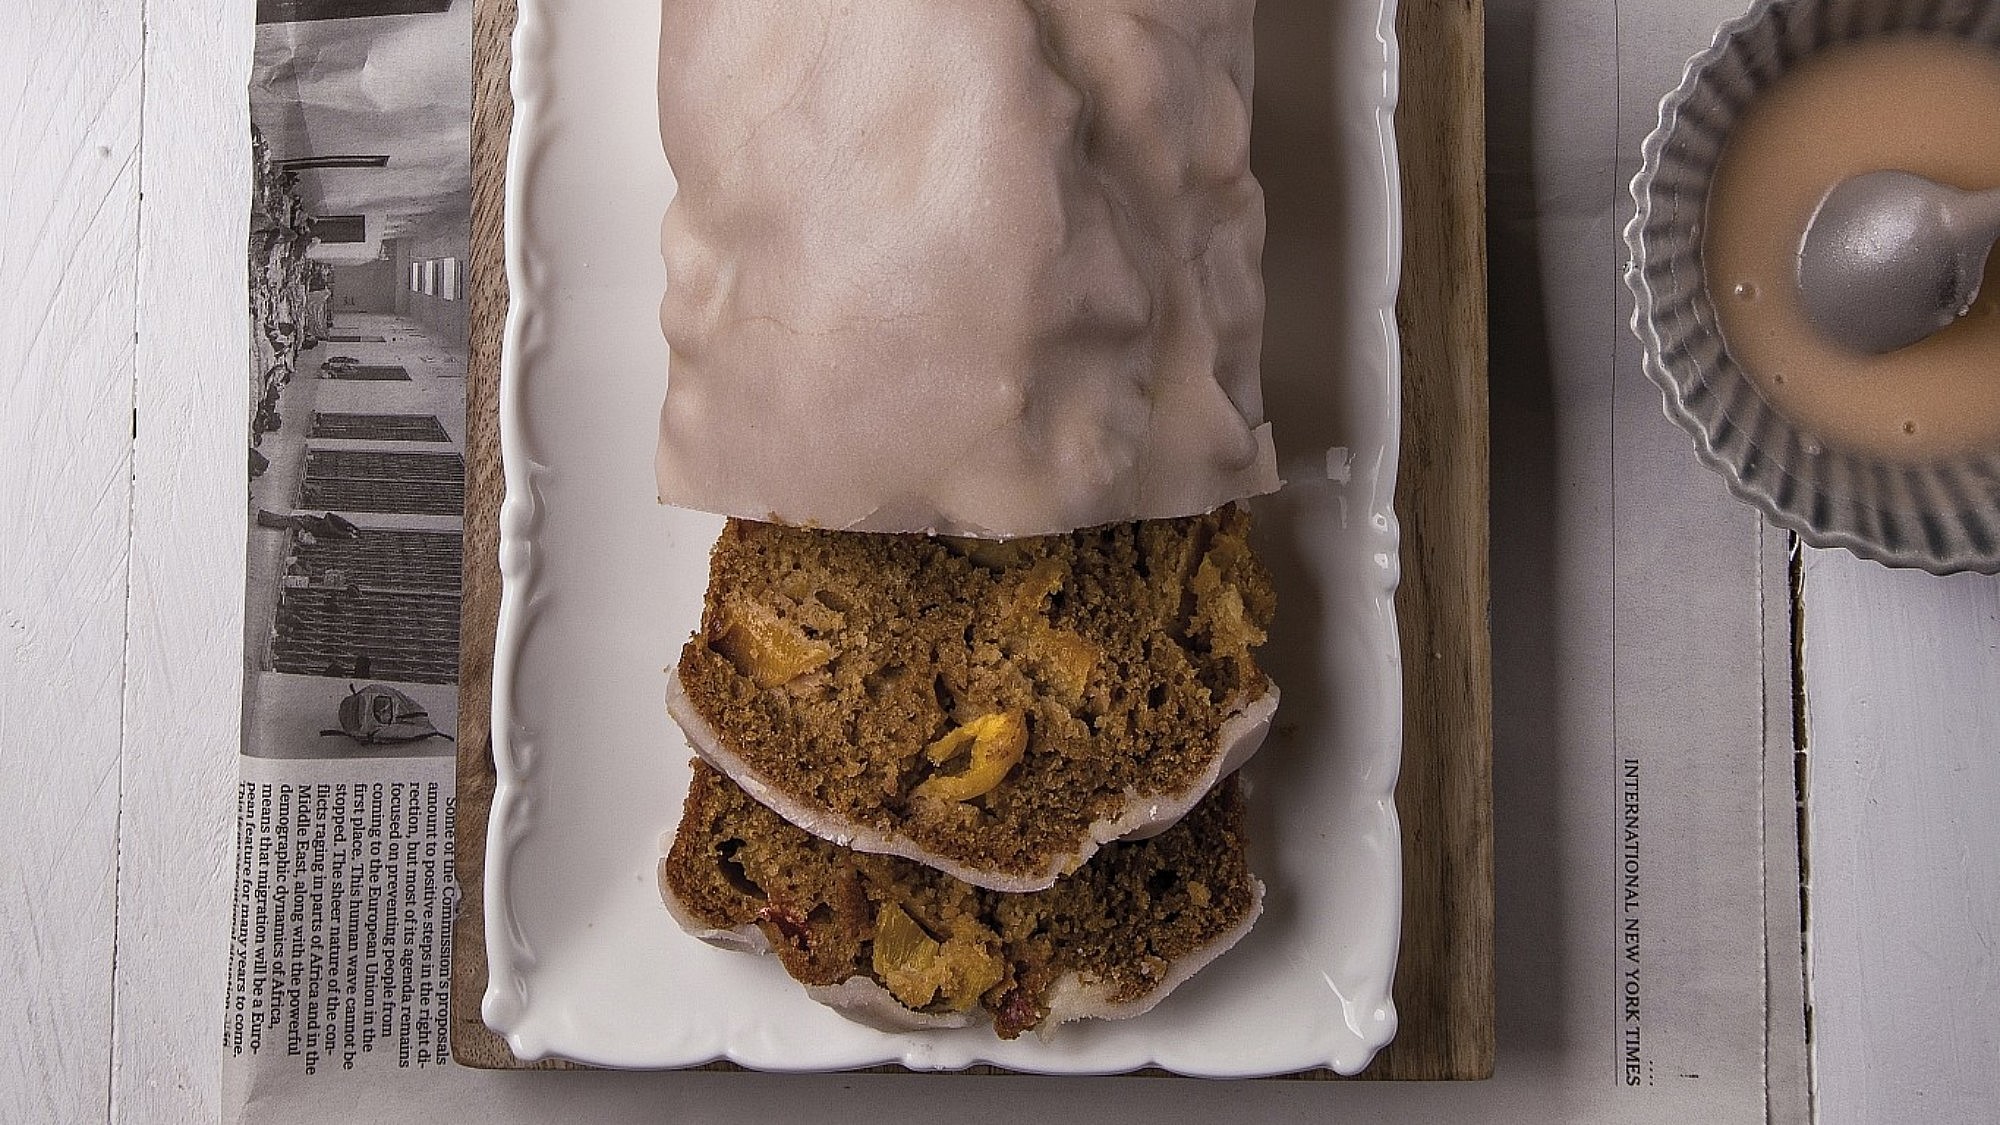 עוגת נקטרינות בחושה של שפית־קונדיטורית דורית ברנד וטליה רסנר.צילום: שרית גופן. סטיילינג: ענת לבל